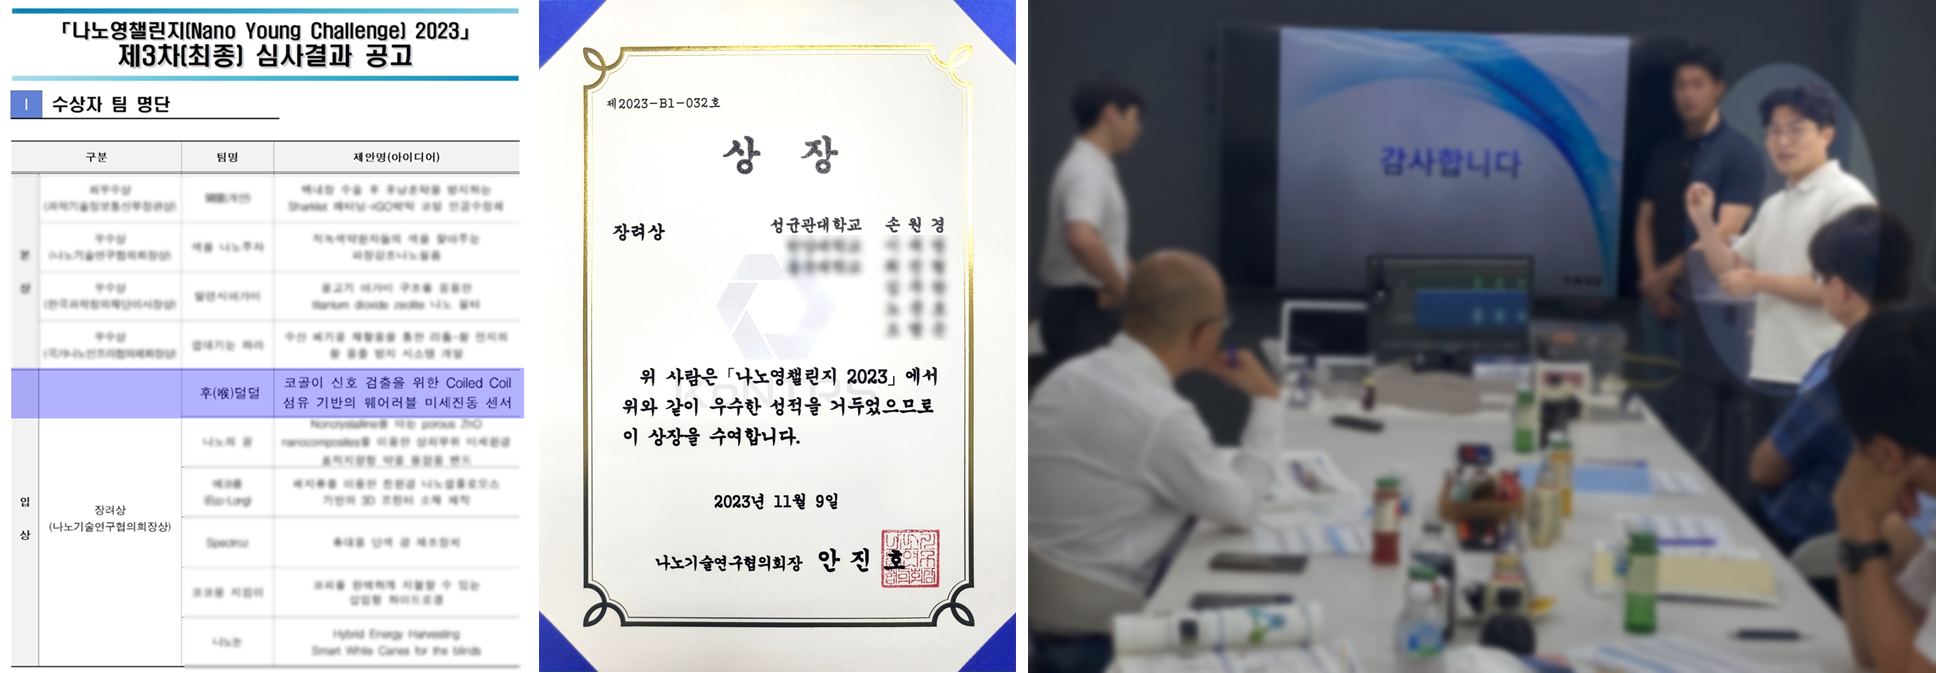 [2023-후기] 손원경 장학생 활동 결과 공유